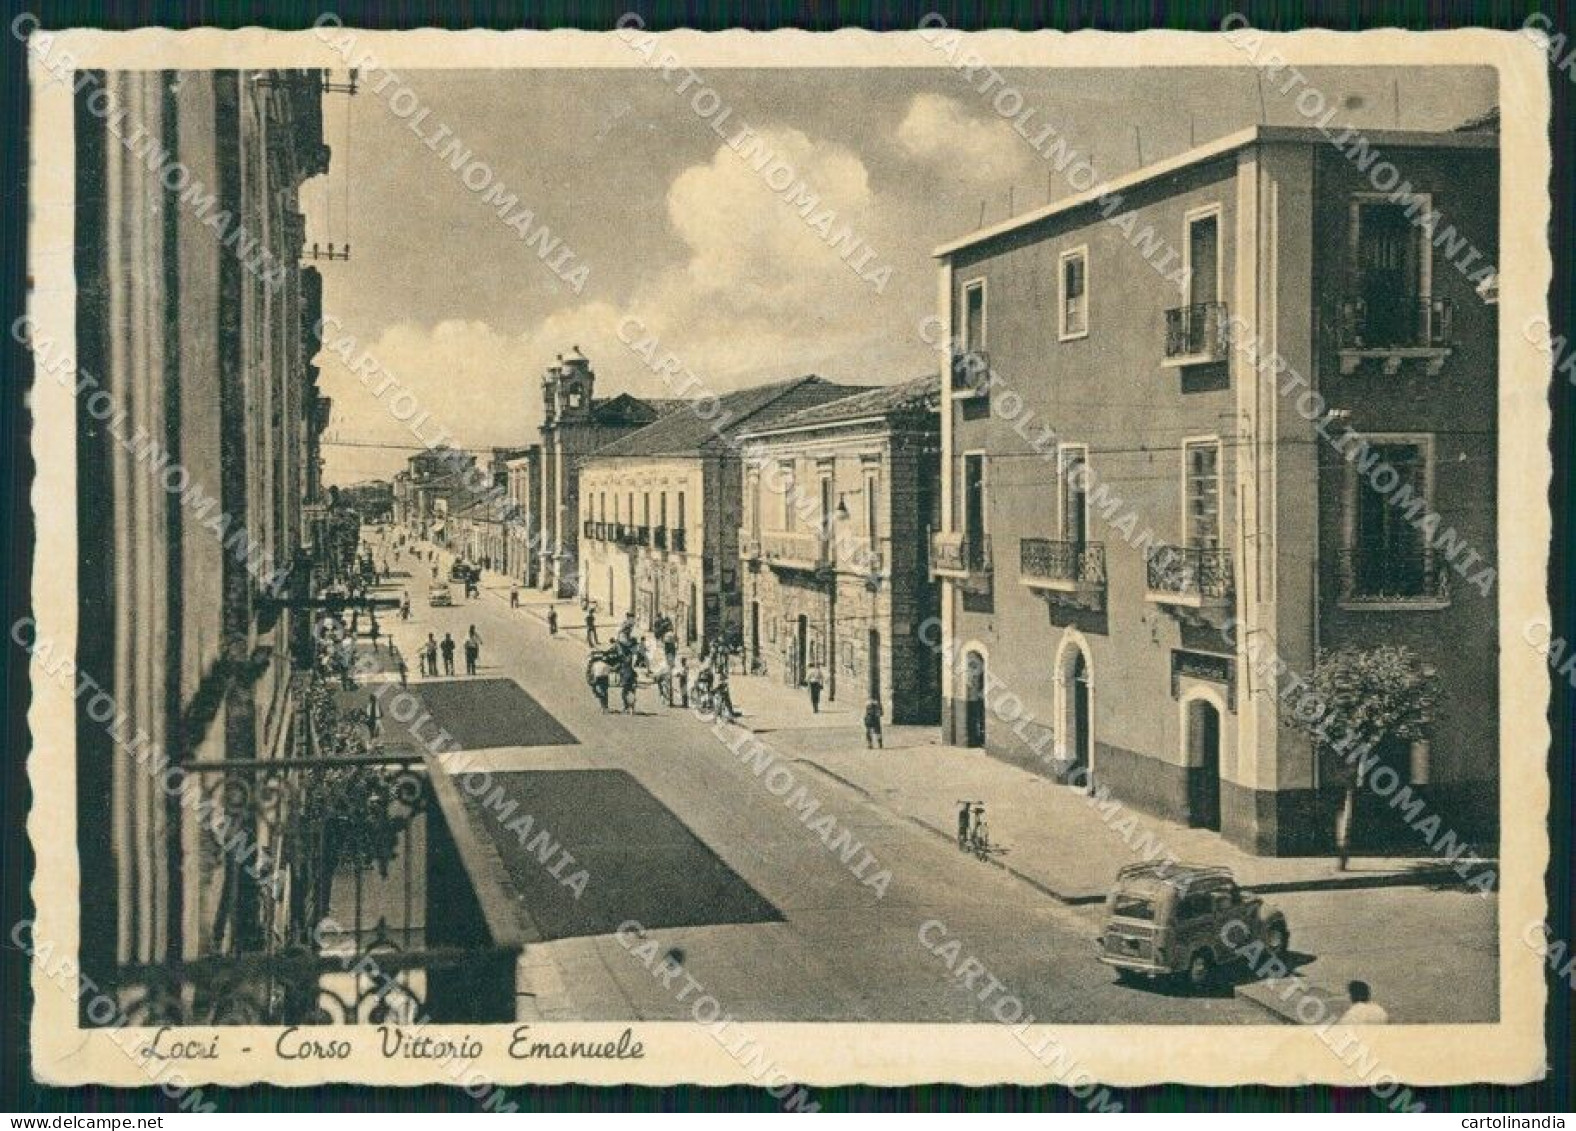 Reggio Calabria Locri FG Cartolina ZKM6973 - Reggio Calabria